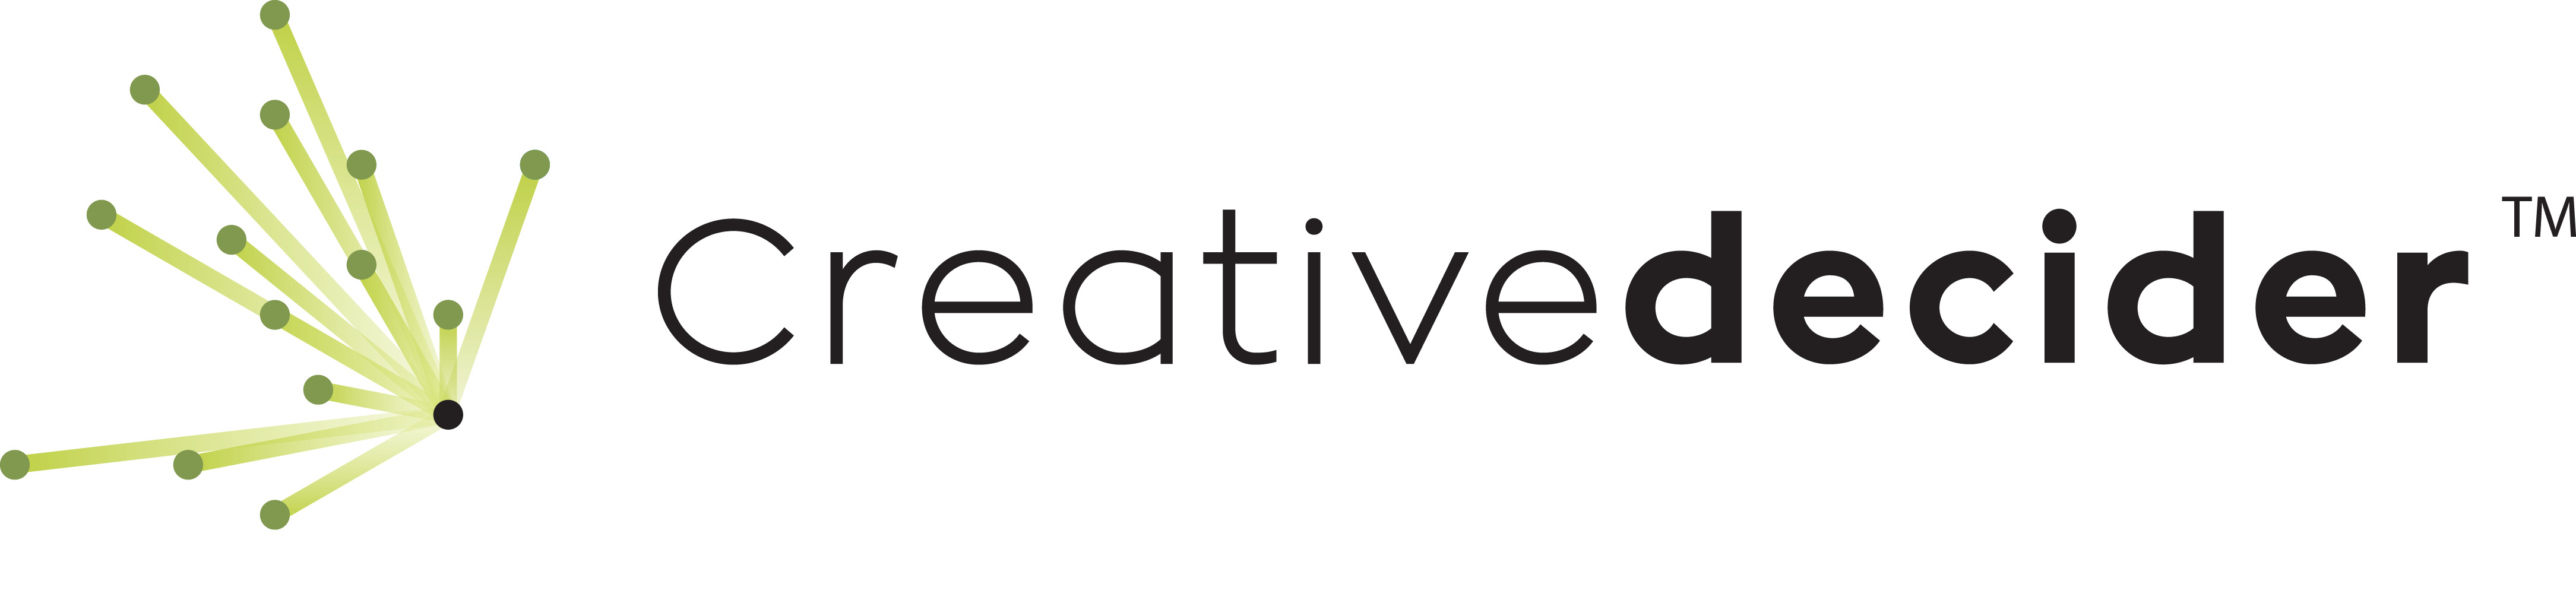 creative-decider__logo-original-png.png